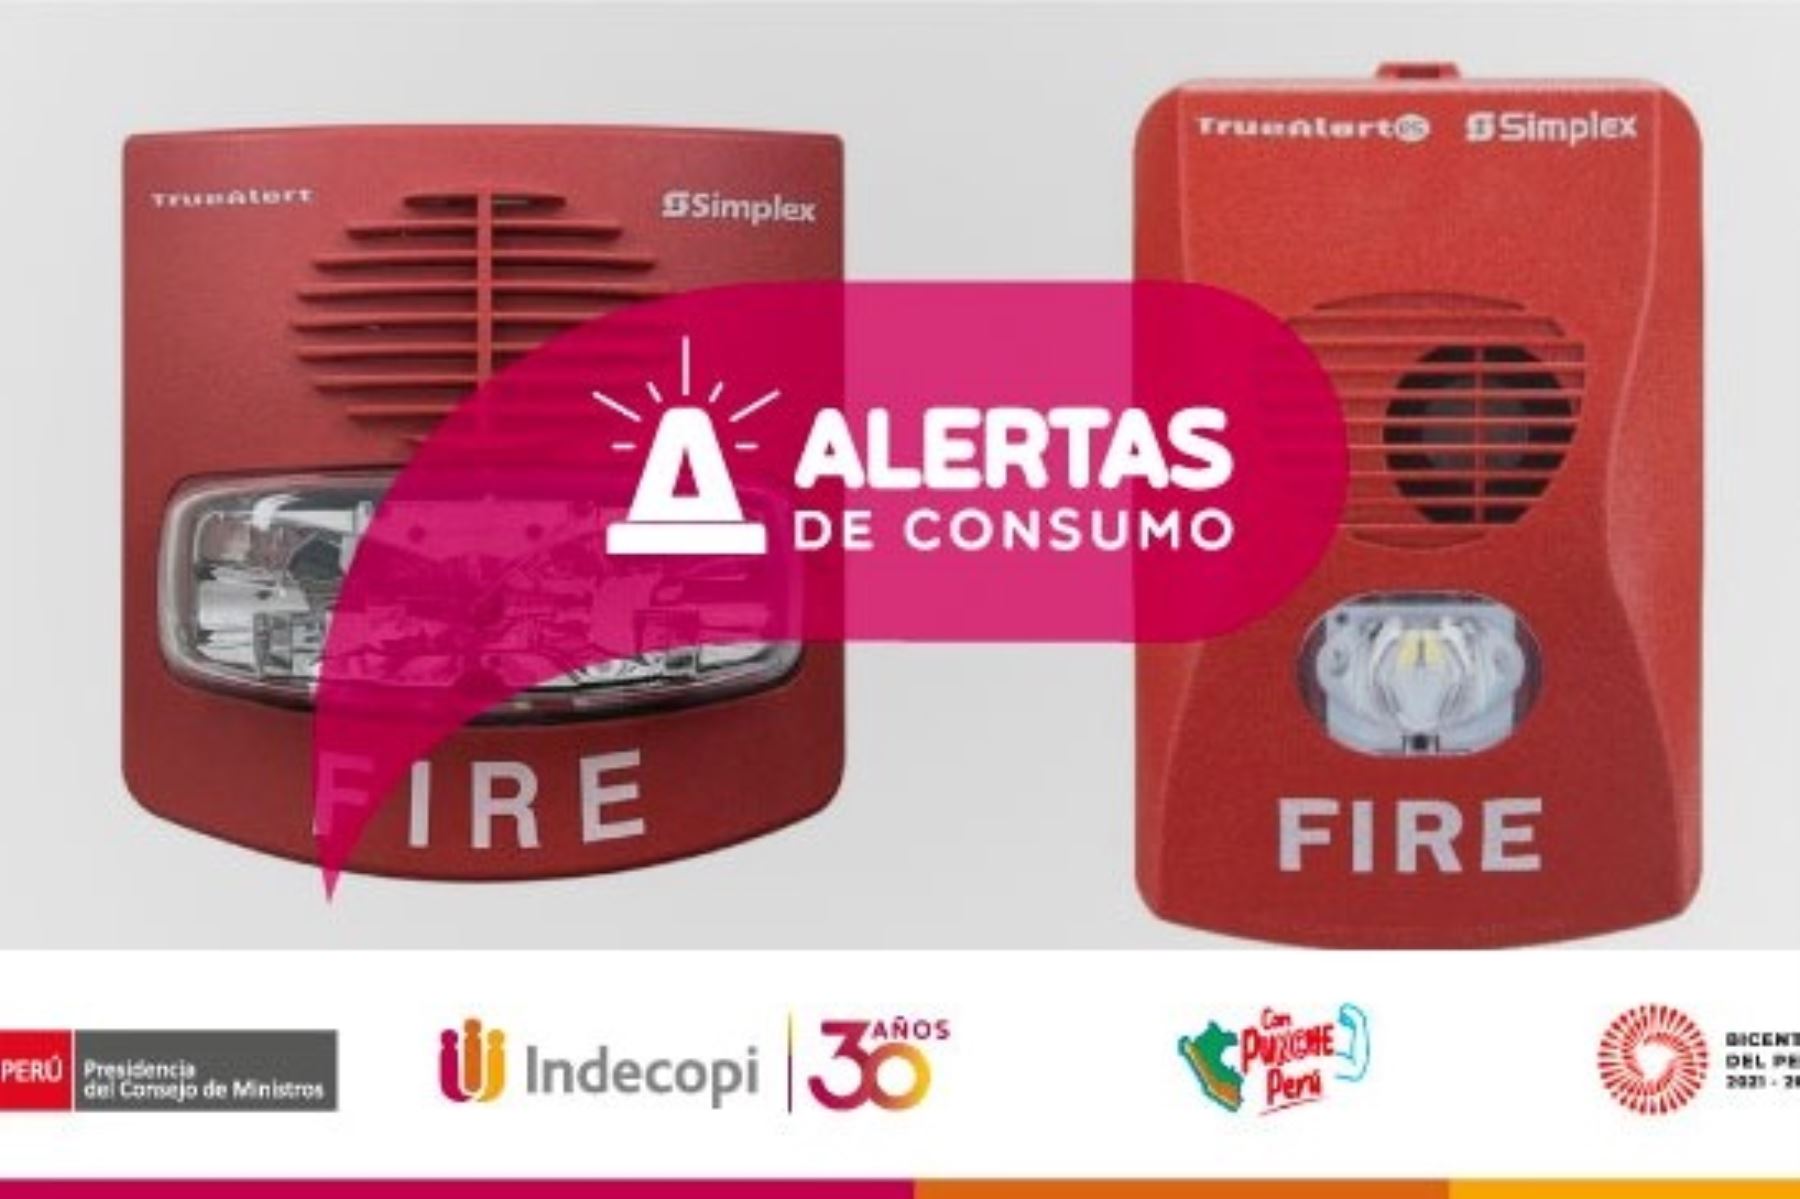 Indecopi informa que alla en más de 700 dispositivos TrueAlert ES afectaría el funcionamiento de alarmas contra incendios. Foto:ANDINA/Difusión